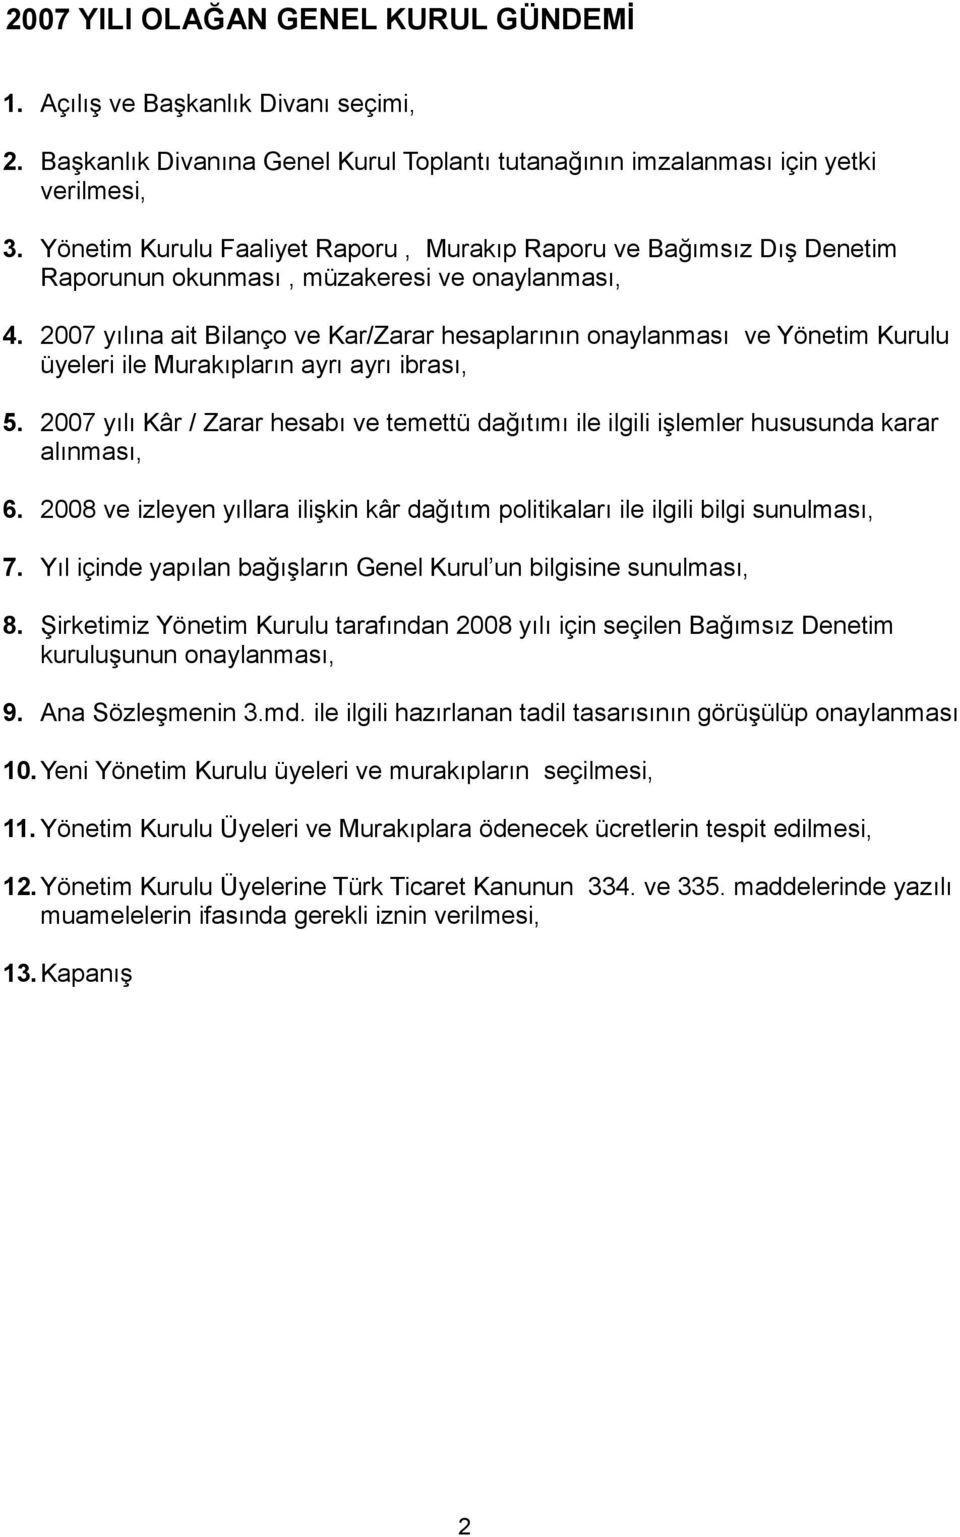 2007 yılına ait Bilanço ve Kar/Zarar hesaplarının onaylanması ve Yönetim Kurulu üyeleri ile Murakıpların ayrı ayrı ibrası, 5.